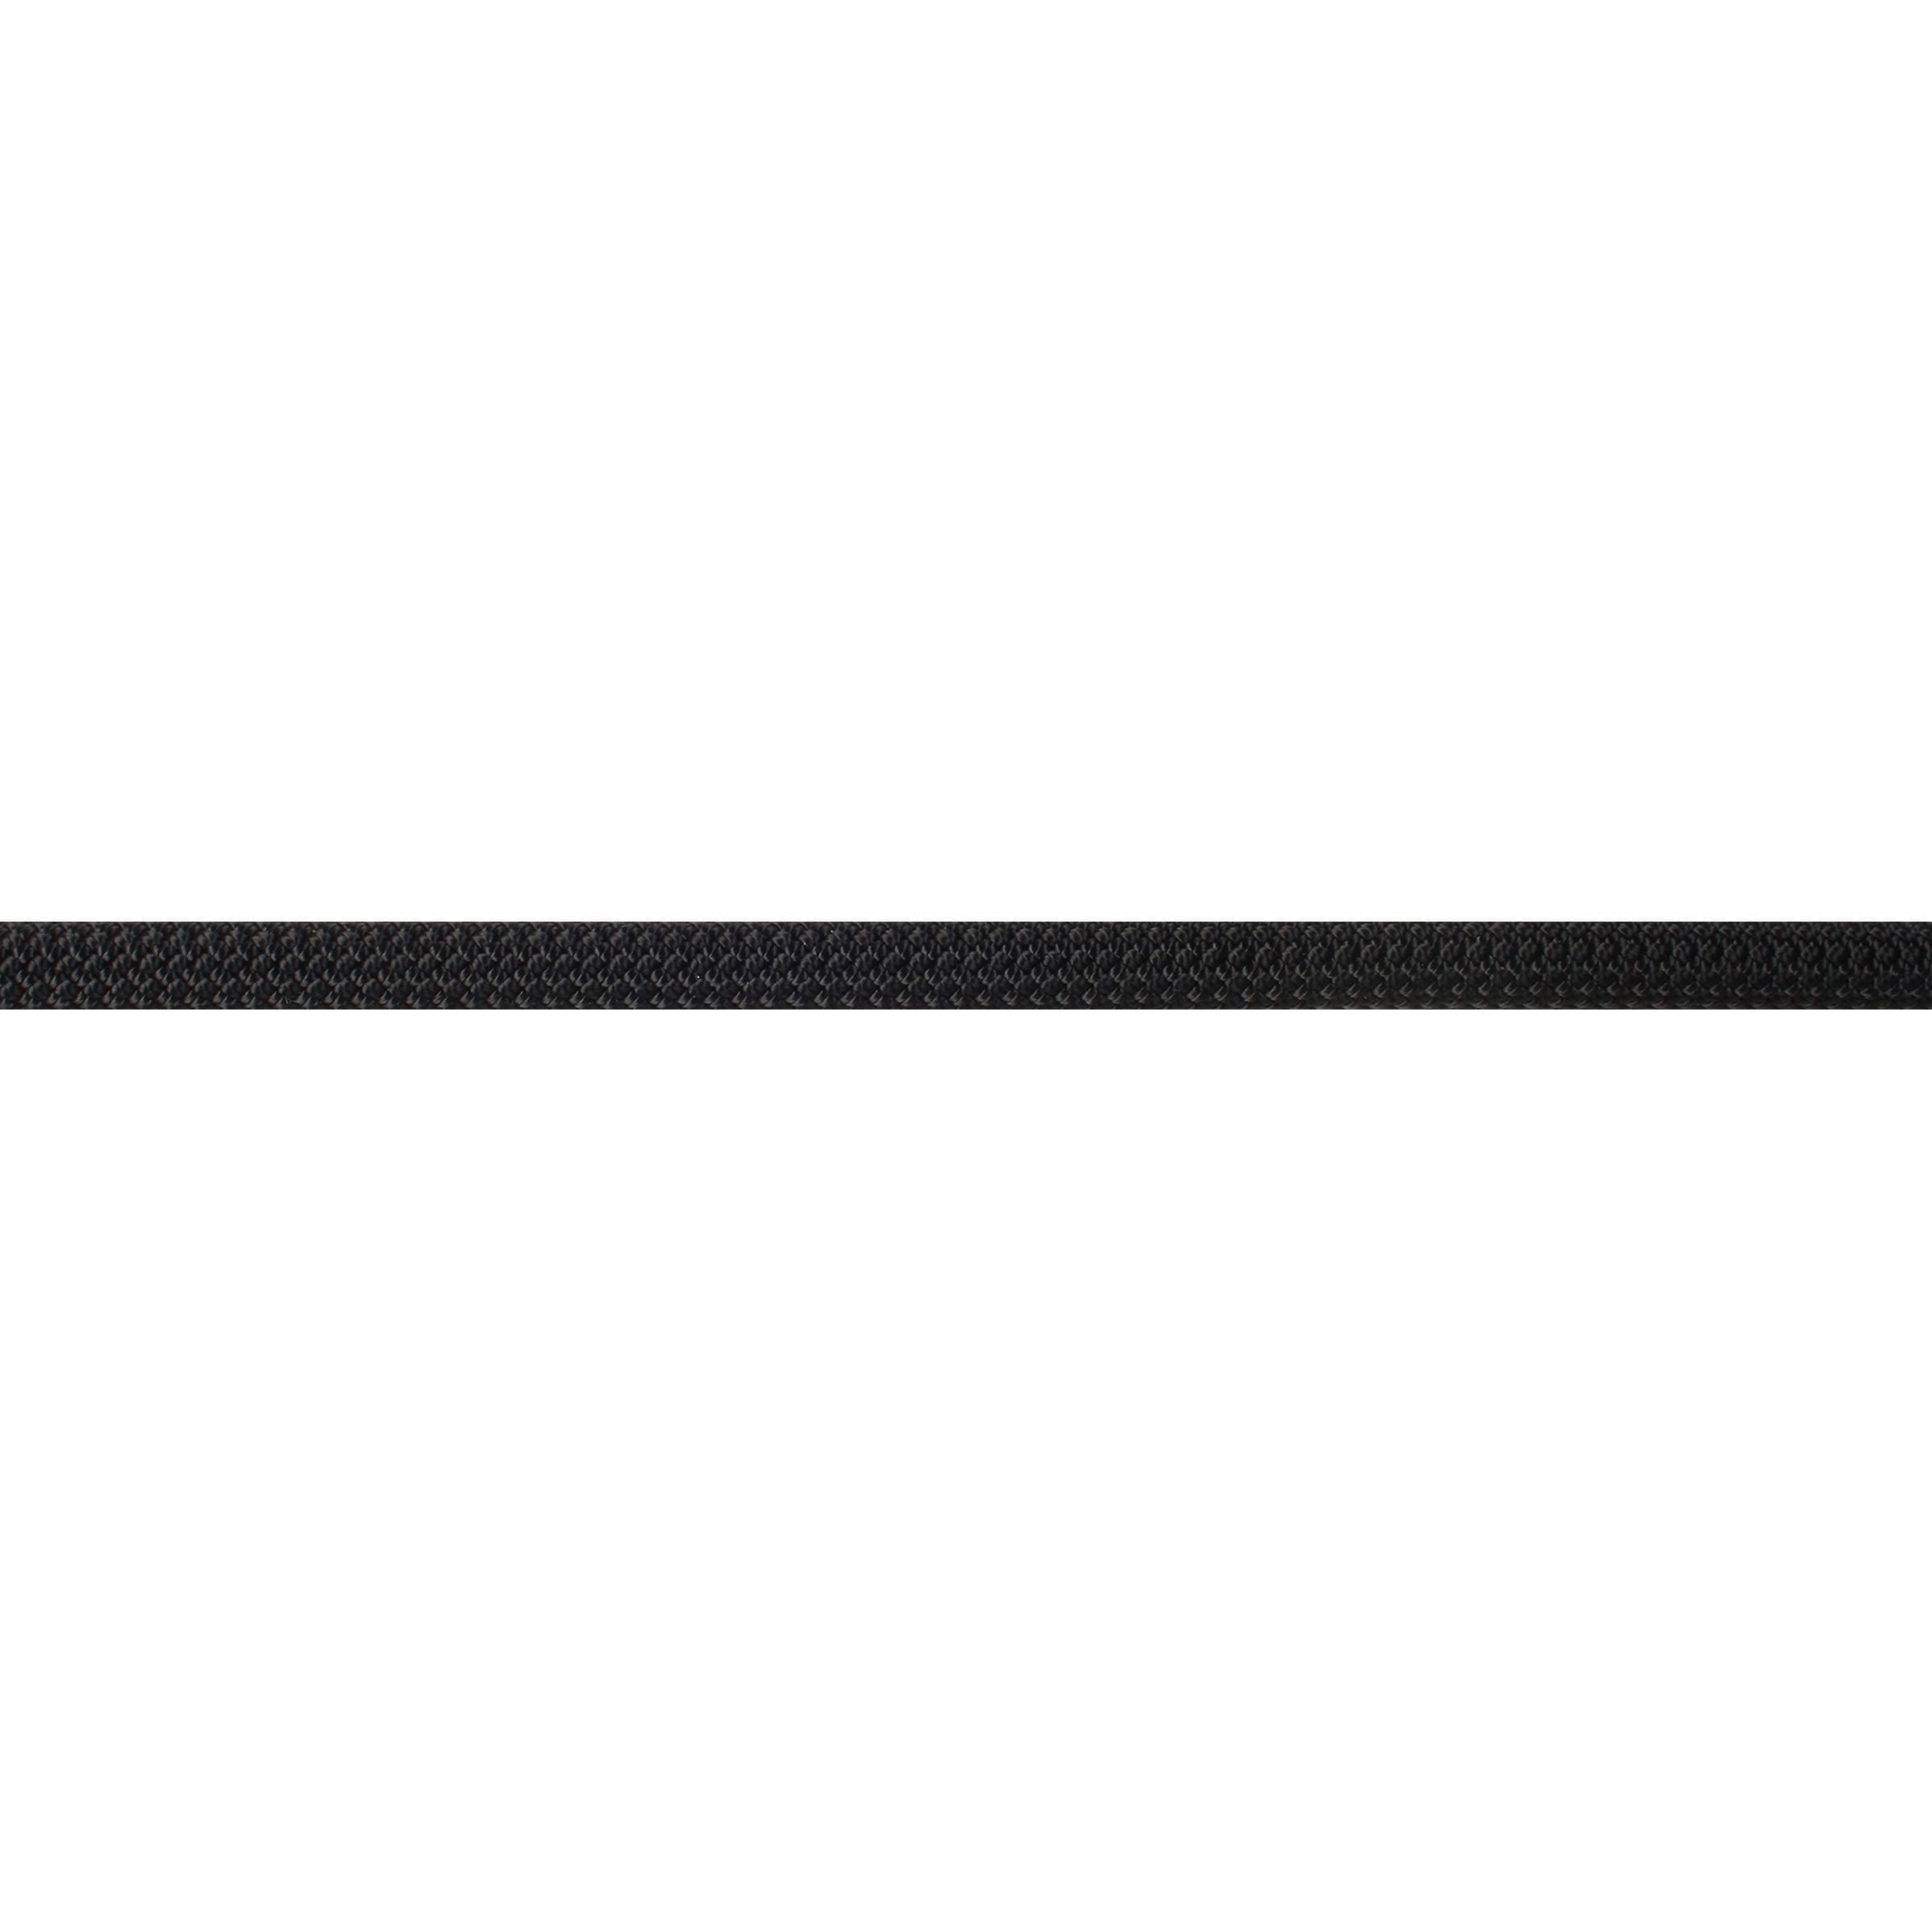 9mm×100m(EW0130) セミスタティックロープ オールブラック 1巻